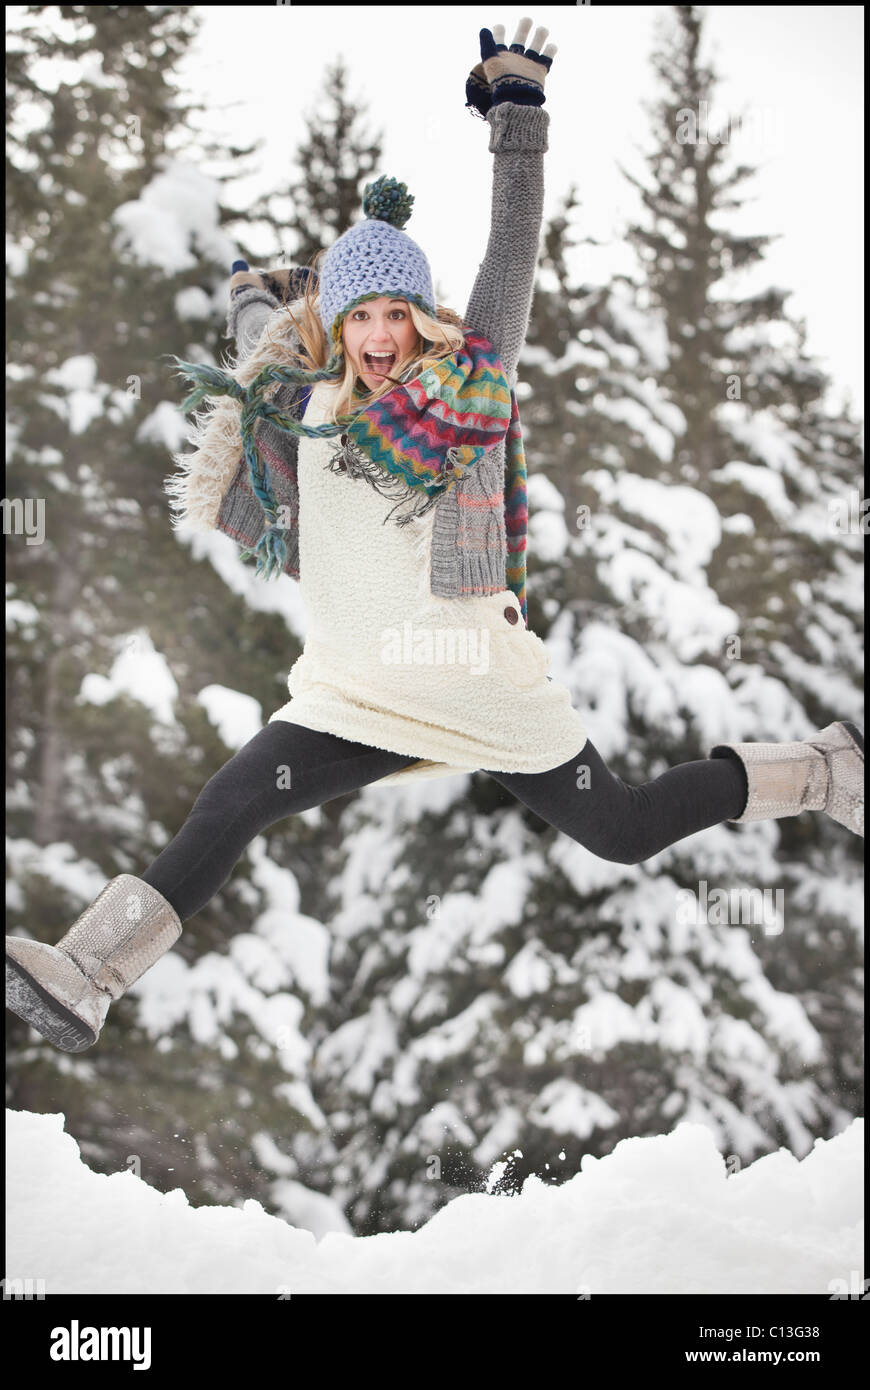 USA, Utah, Salt Lake City, Porträt der jungen Frau im Winter Kleidung springen Stockfoto